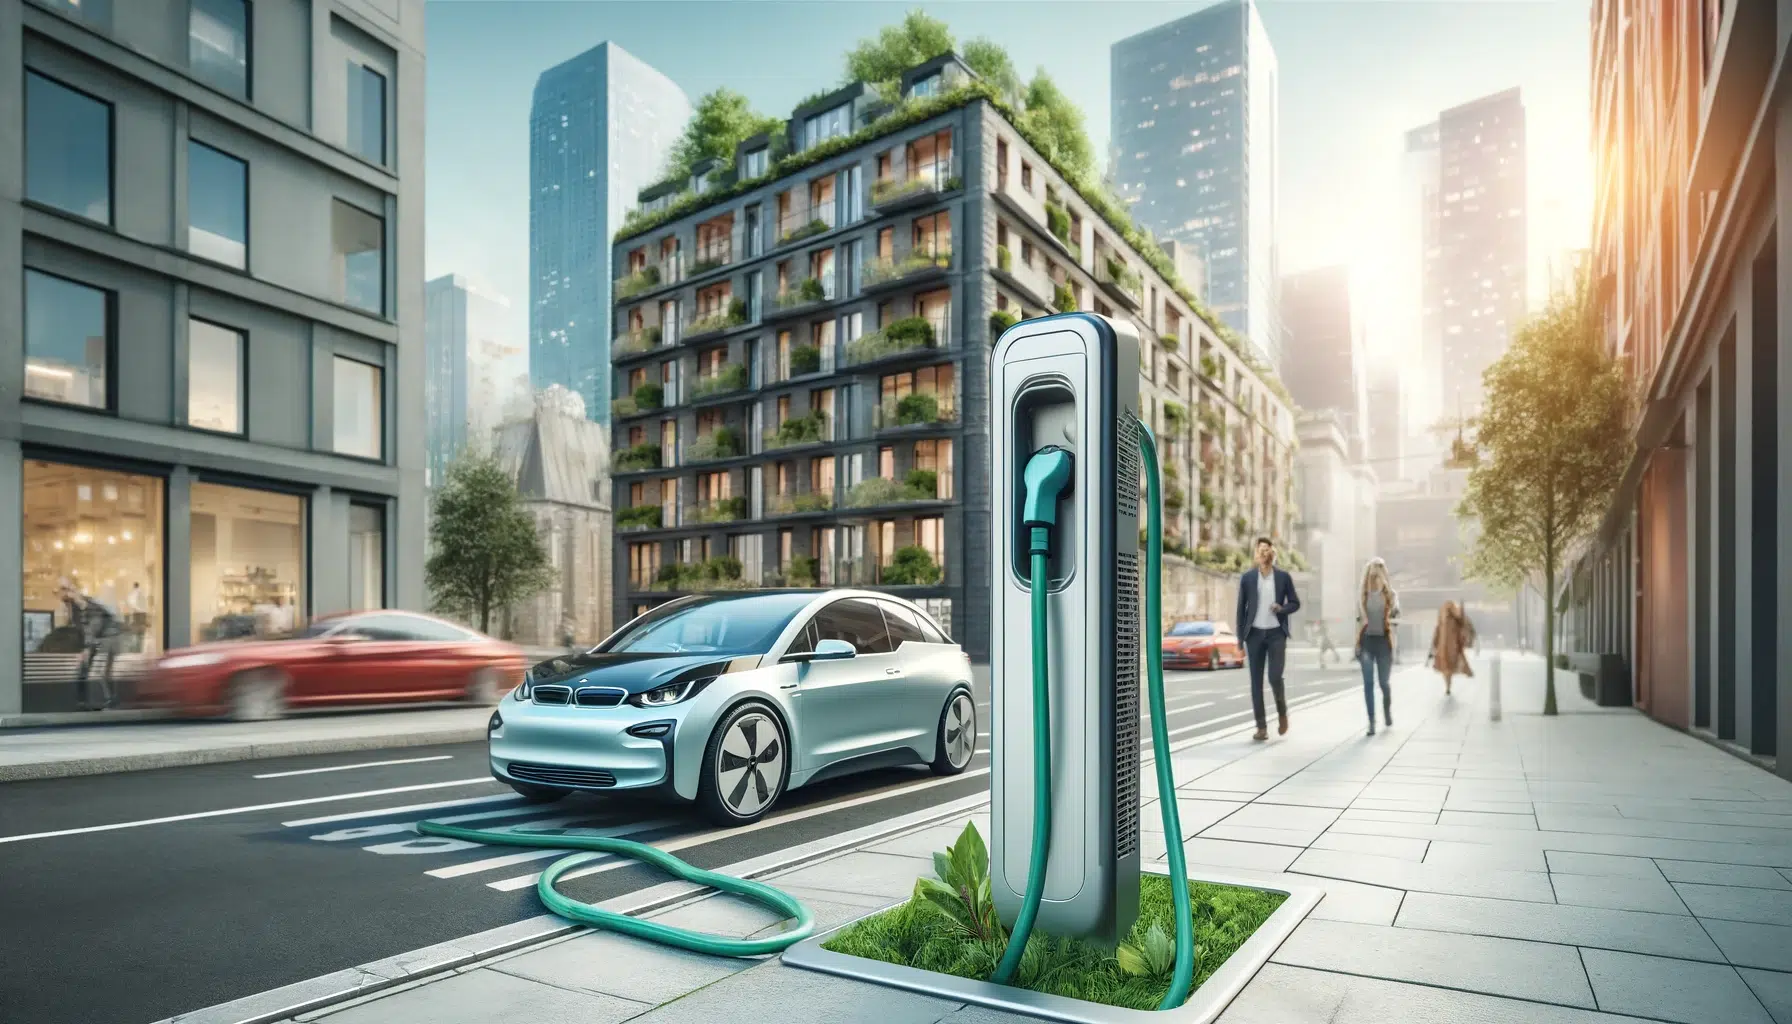 Innovationsfr Une voiture électrique bleu clair est en train de se recharger à une borne dans une rue moderne et ensoleillée bordée dimmeubles contemporains